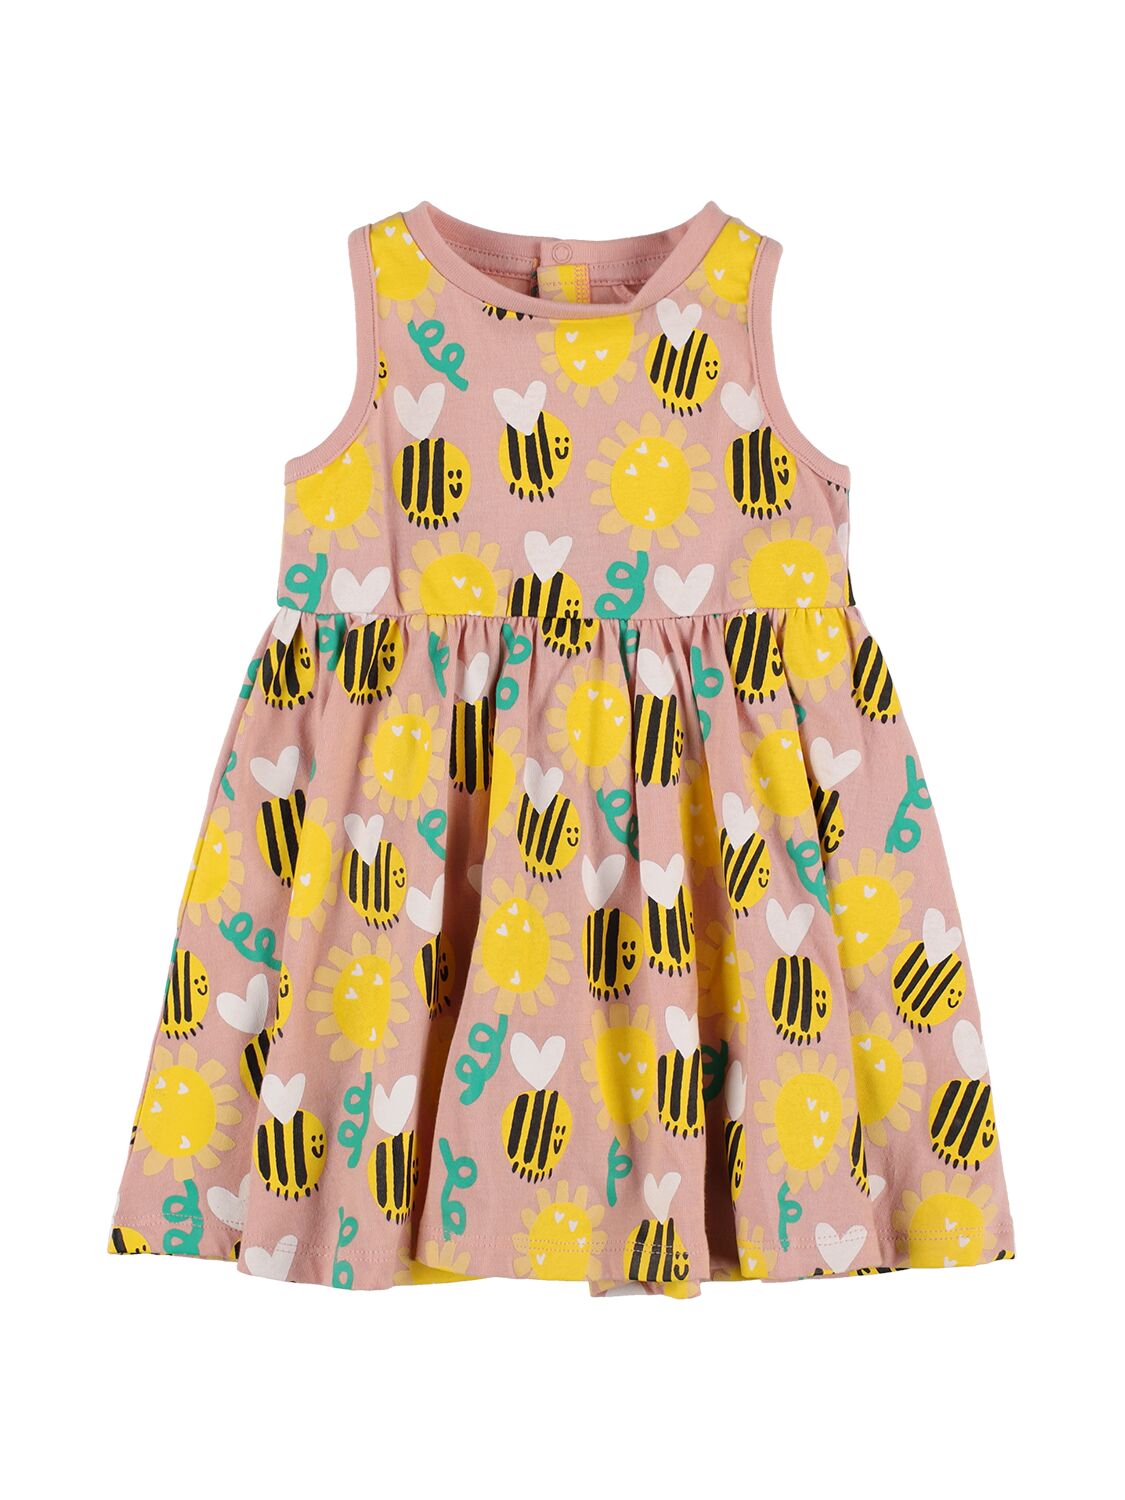 Stella Mccartney Kids' Organic Cotton Printed Dress In Pink,multi